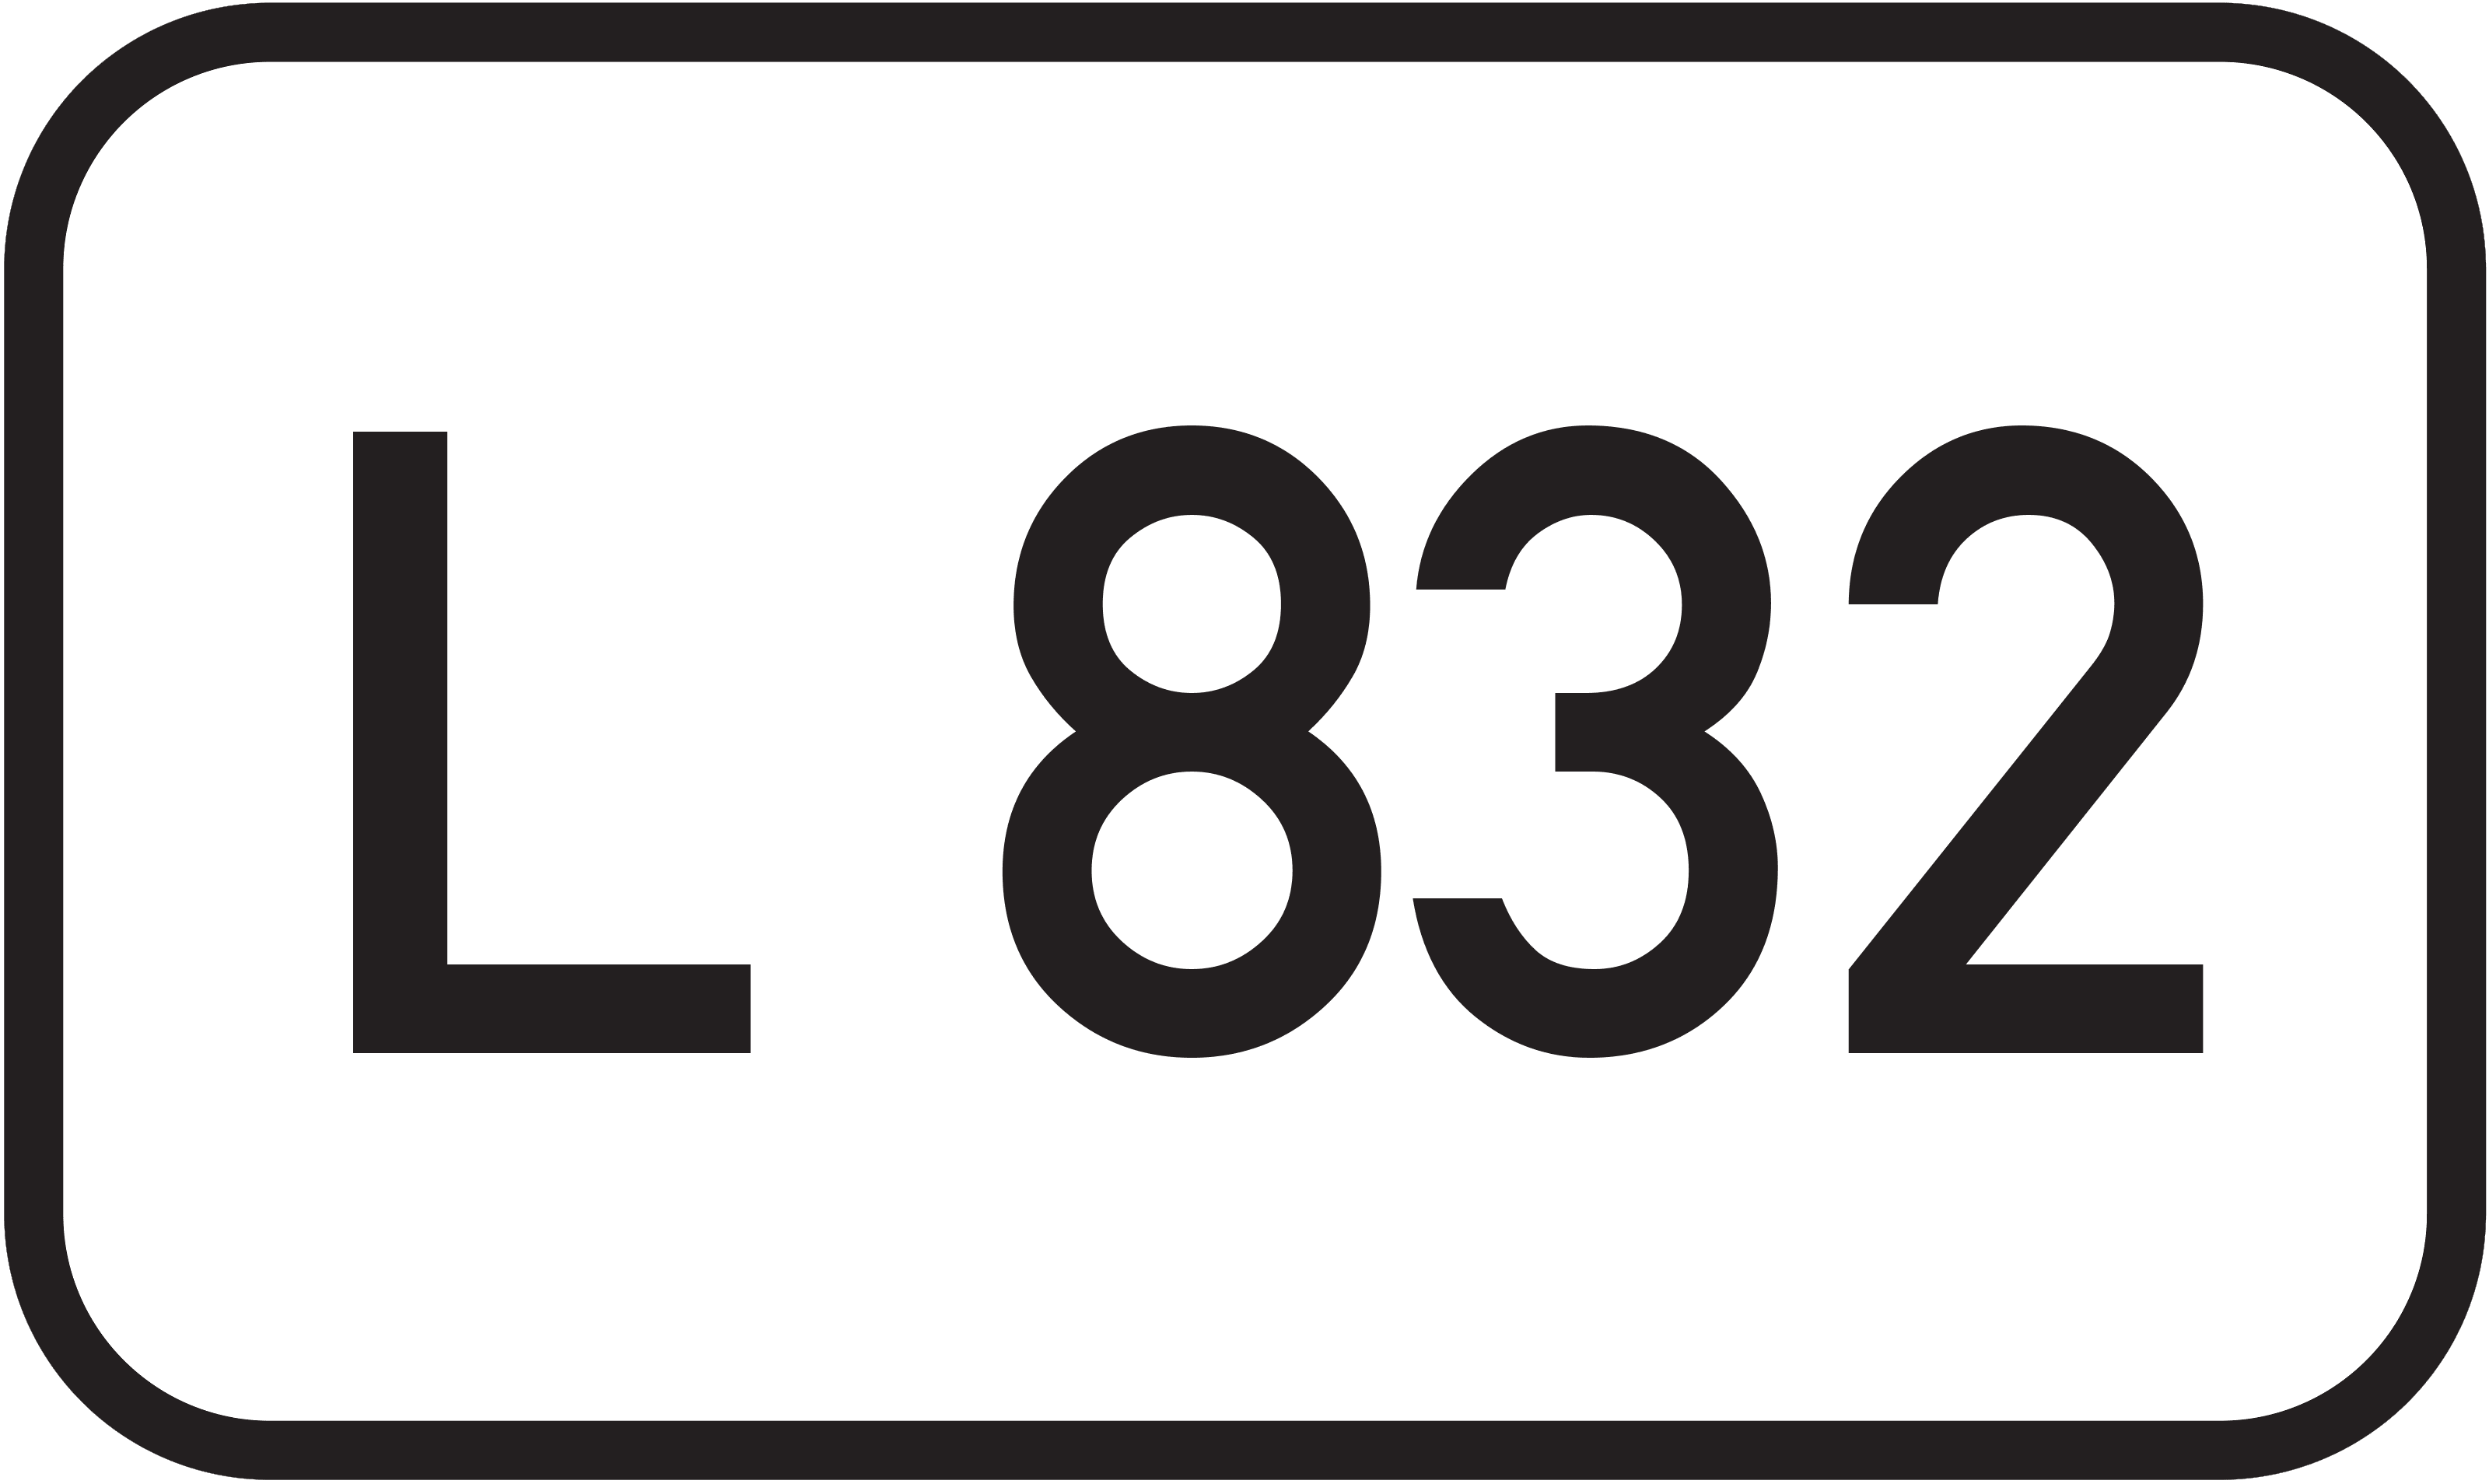 Landesstraße L 832